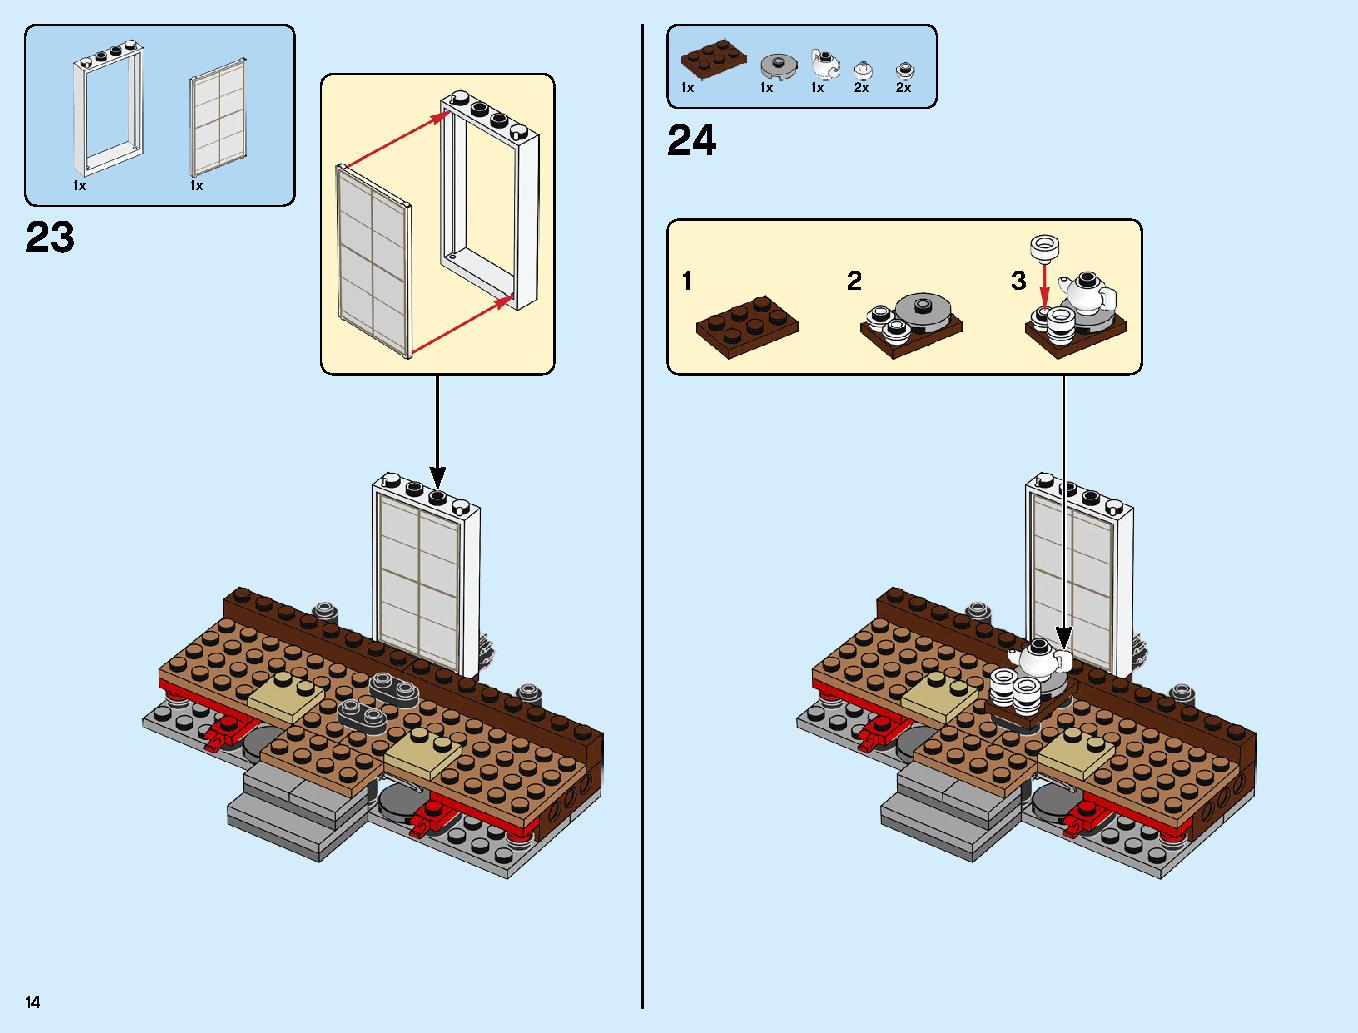 ニンジャ道場 70670 レゴの商品情報 レゴの説明書・組立方法 14 page